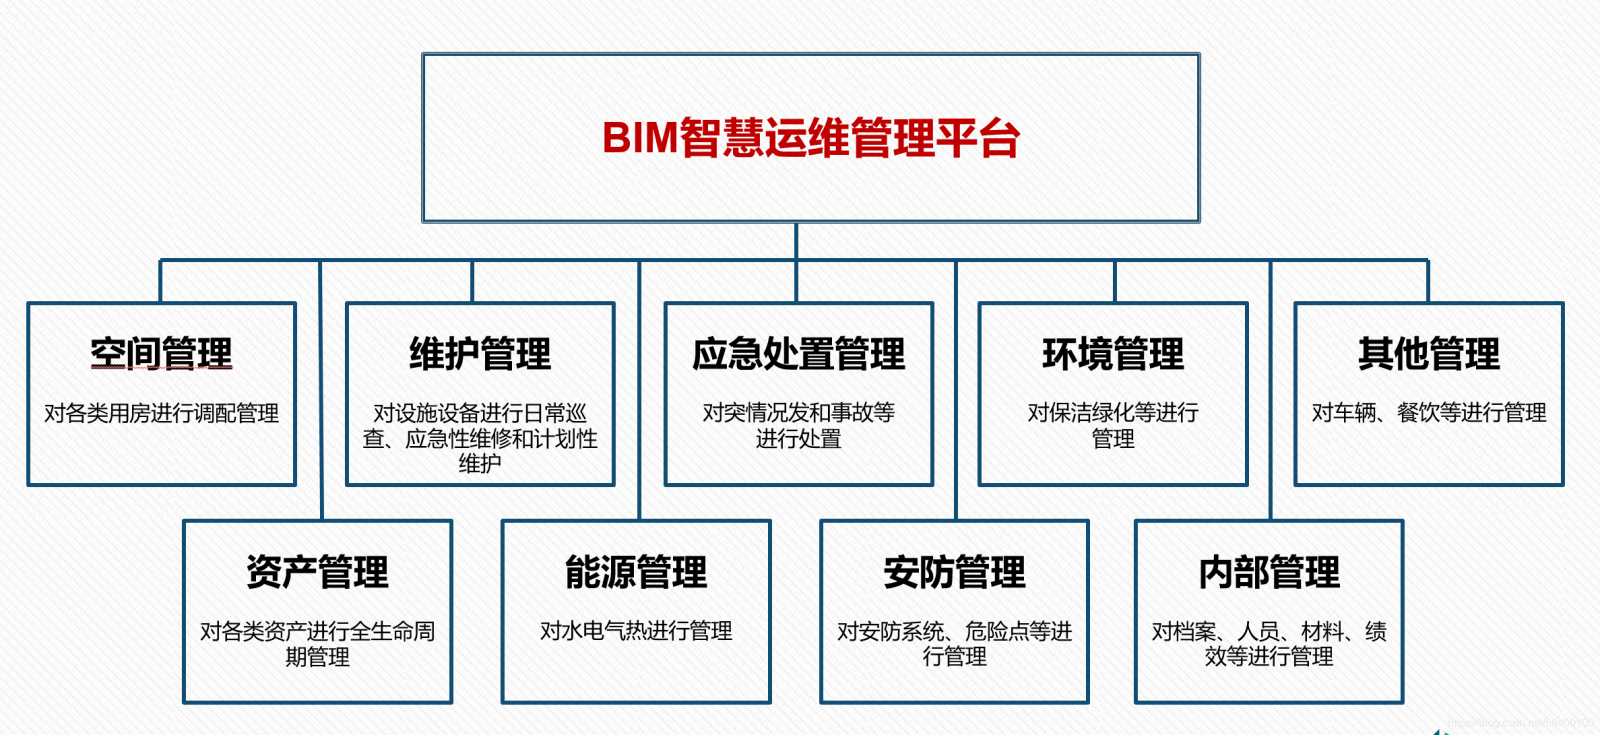 古河bim运维软件产品简介 智慧建筑bim运维管理云平台